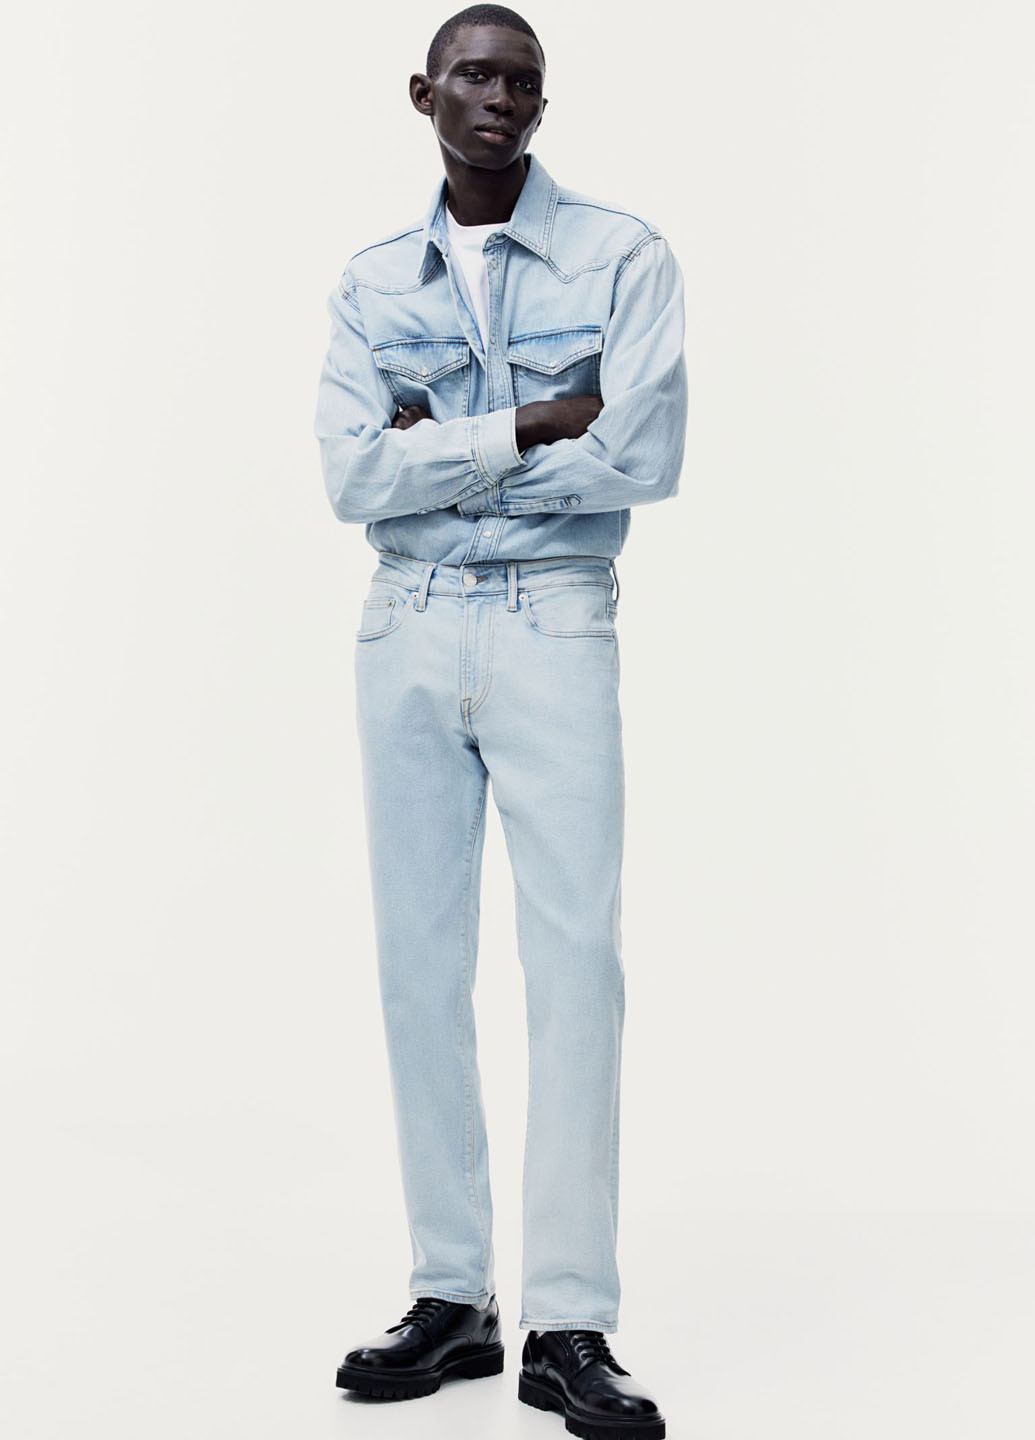 Голубые демисезонные прямые джинсы H&M